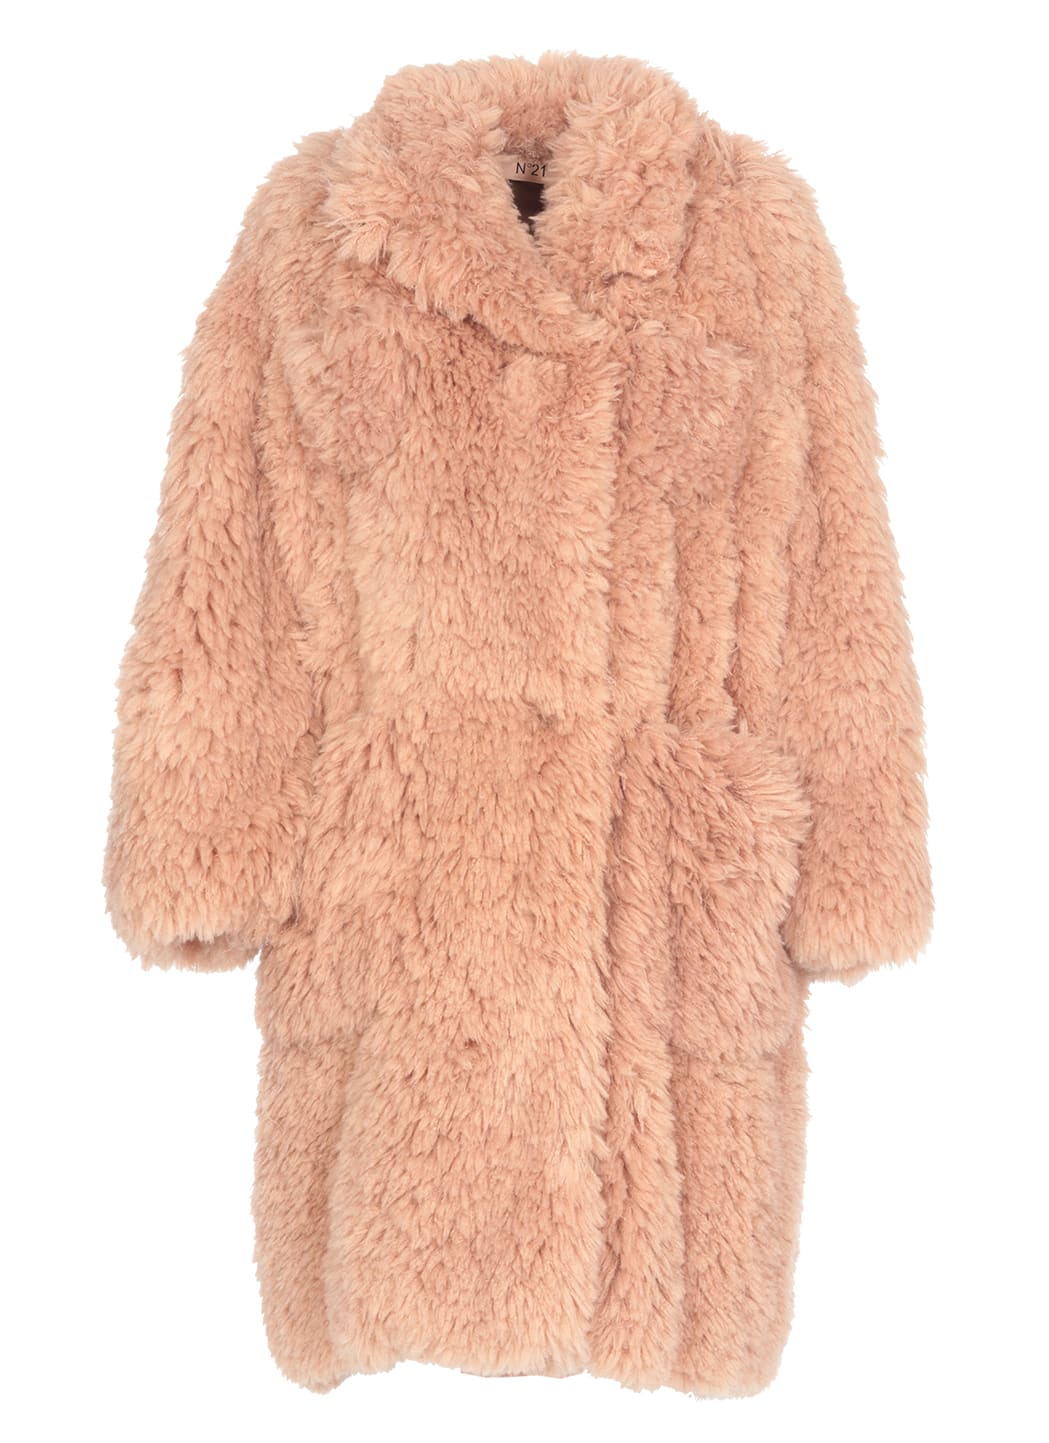 N.21 Eco Fur Coat